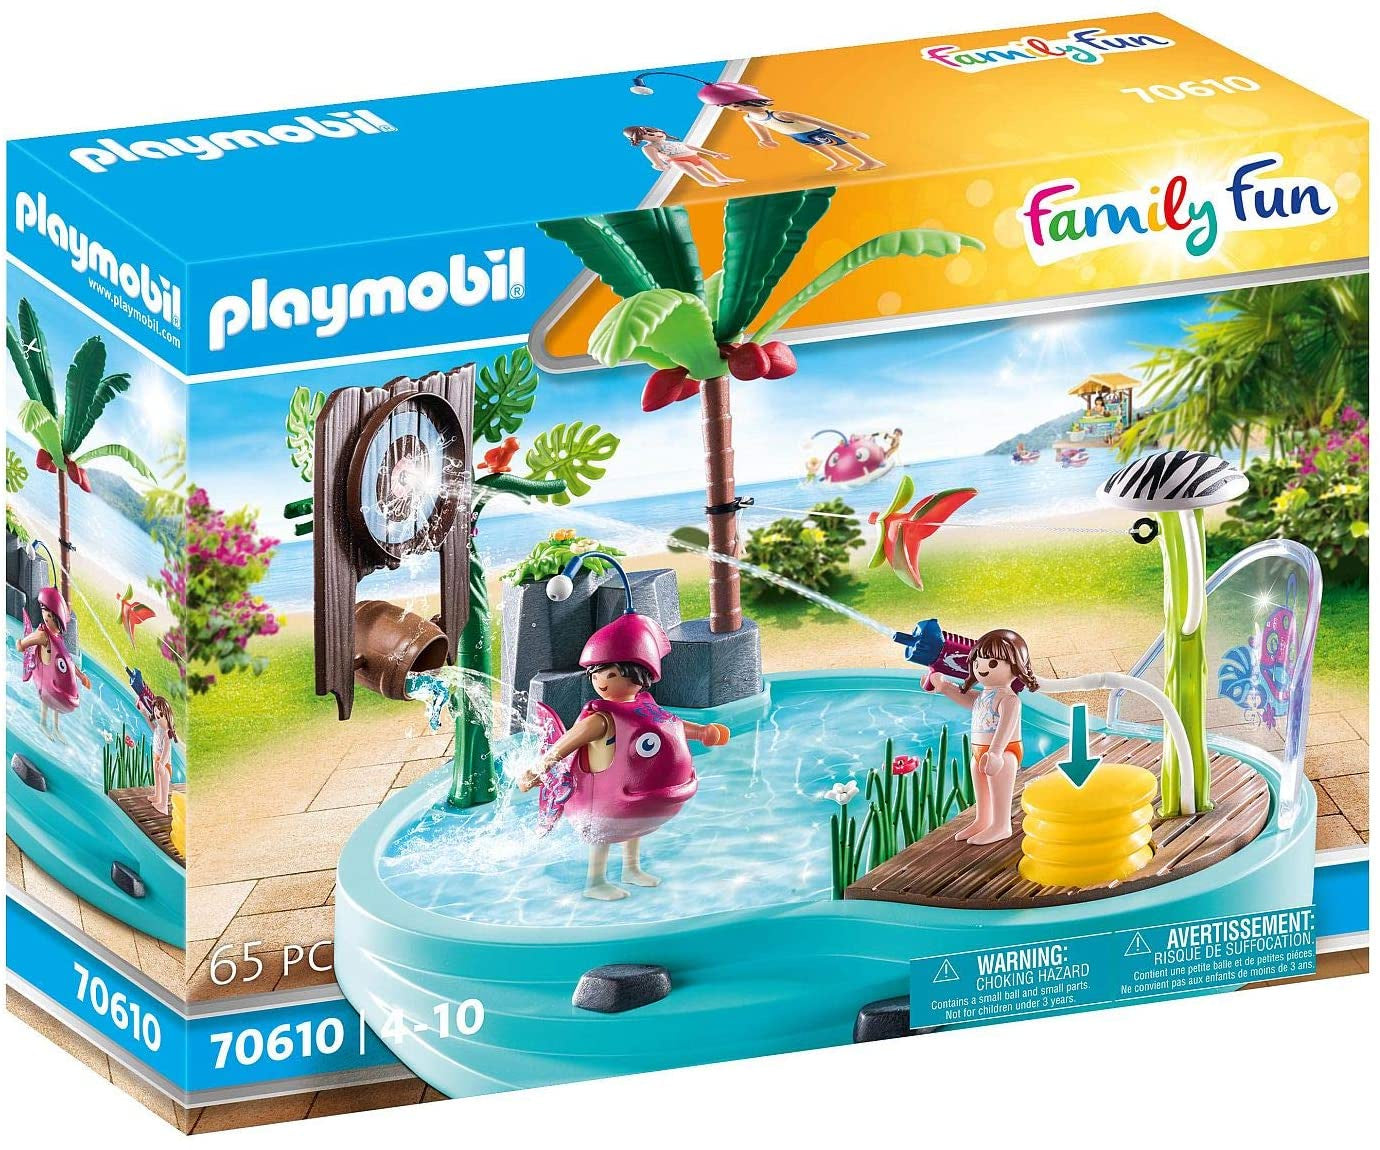 Playmobil Family Fun 70610 Pool With Sprayer